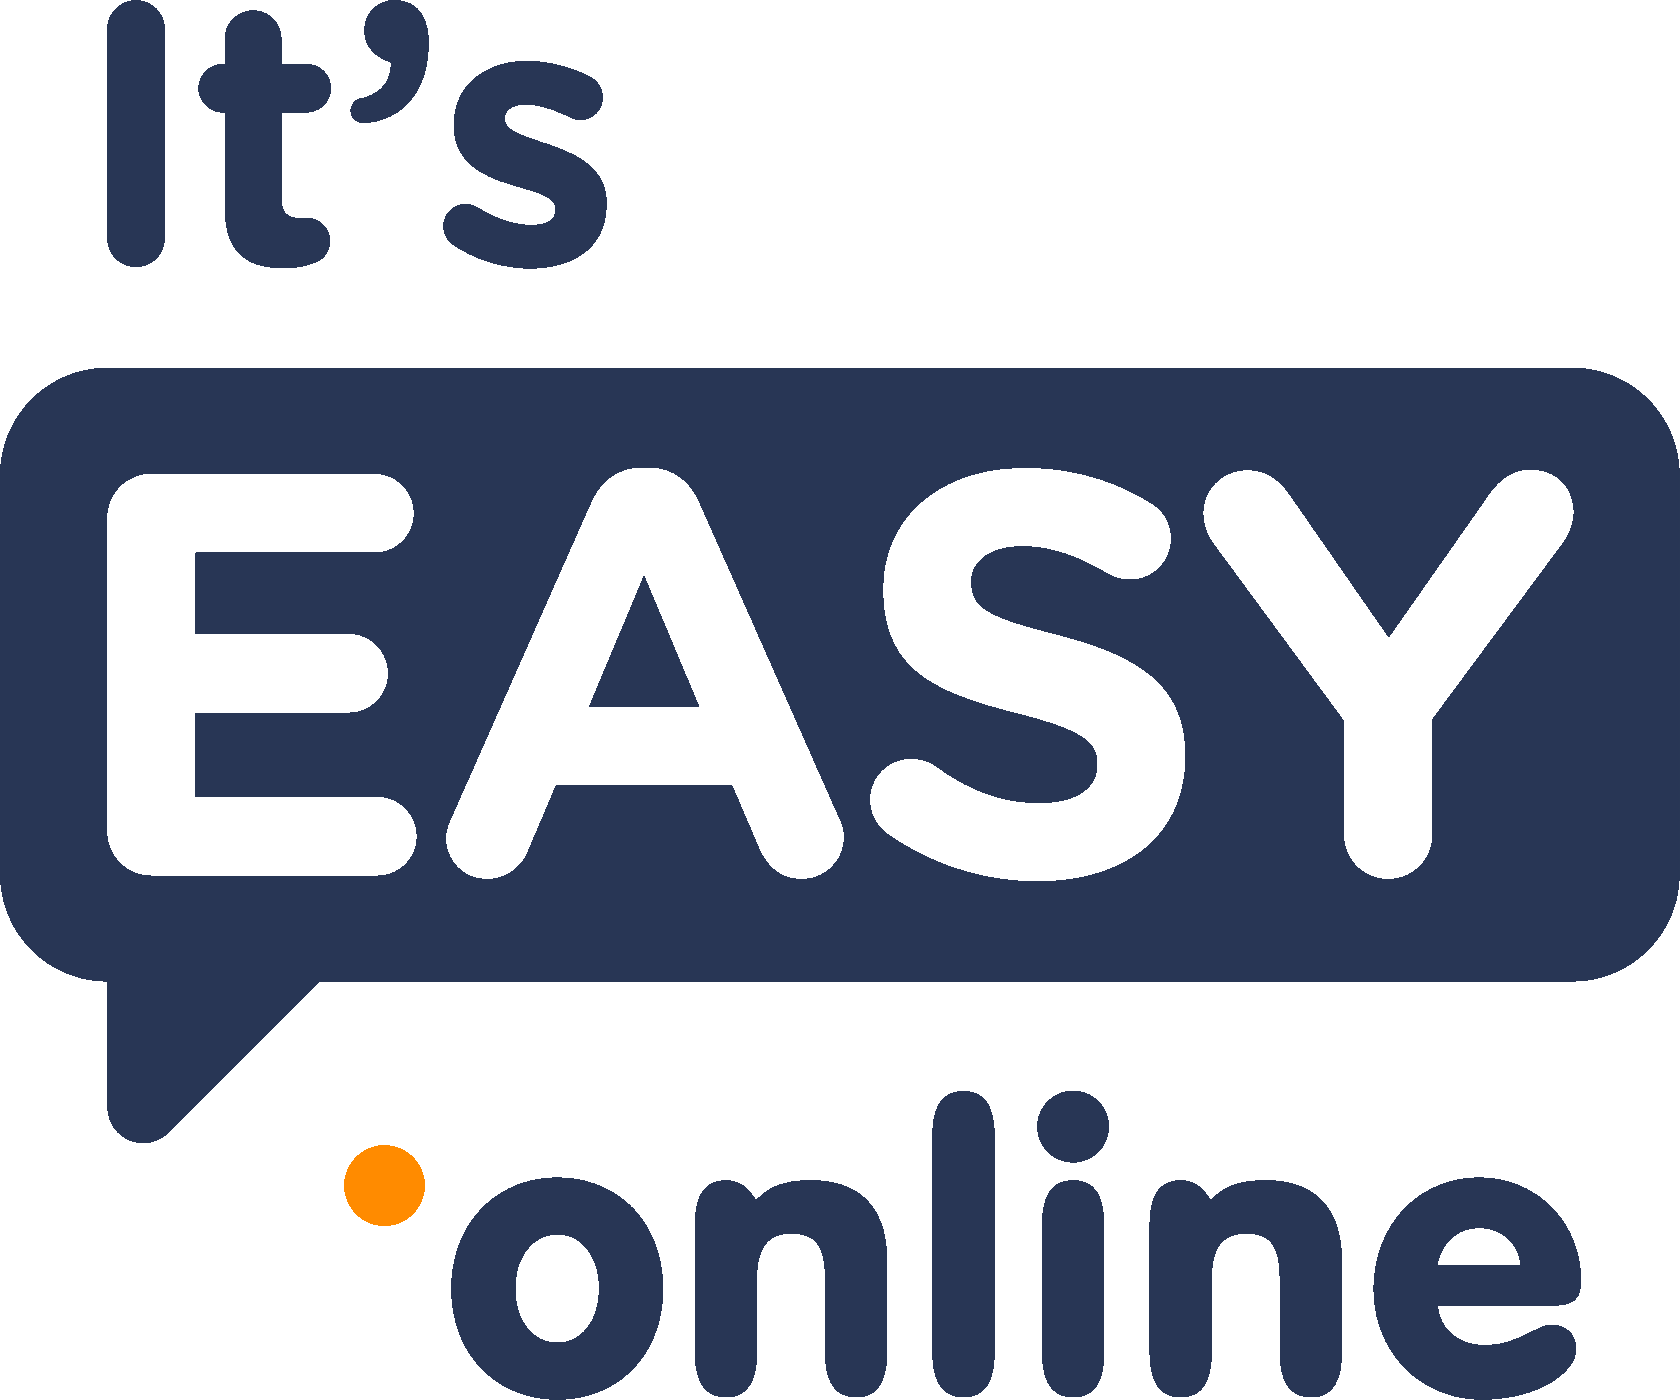 EasyOnline